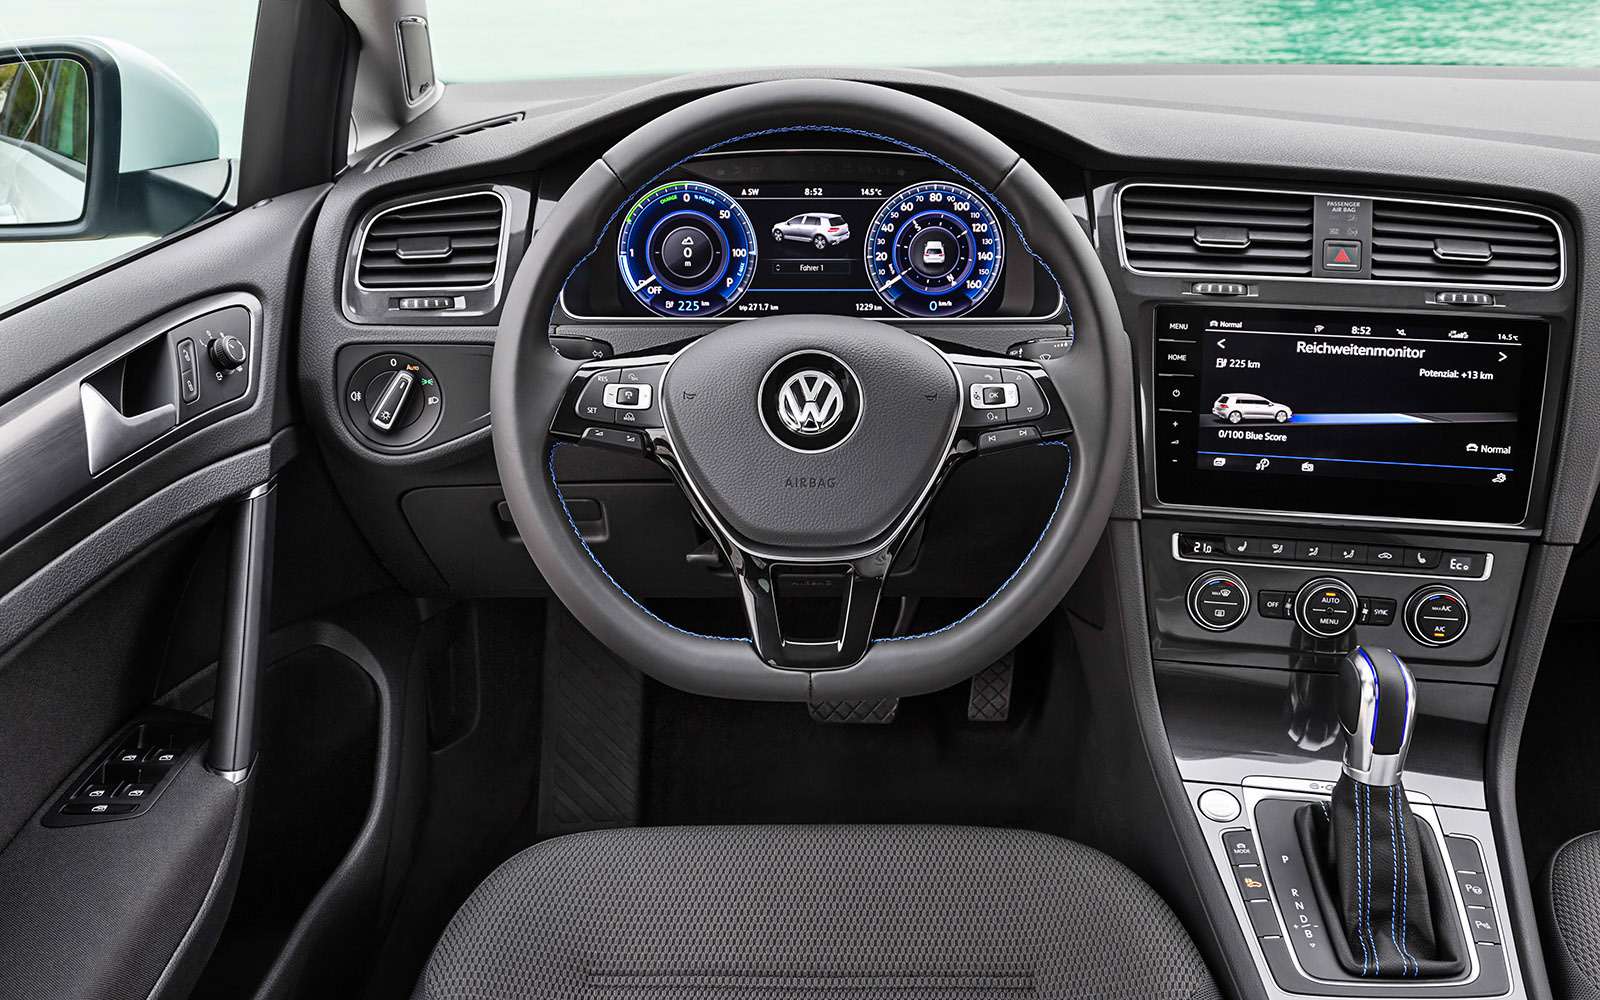 Volkswagen Golf  — сравниваем новые версии — фото 755768